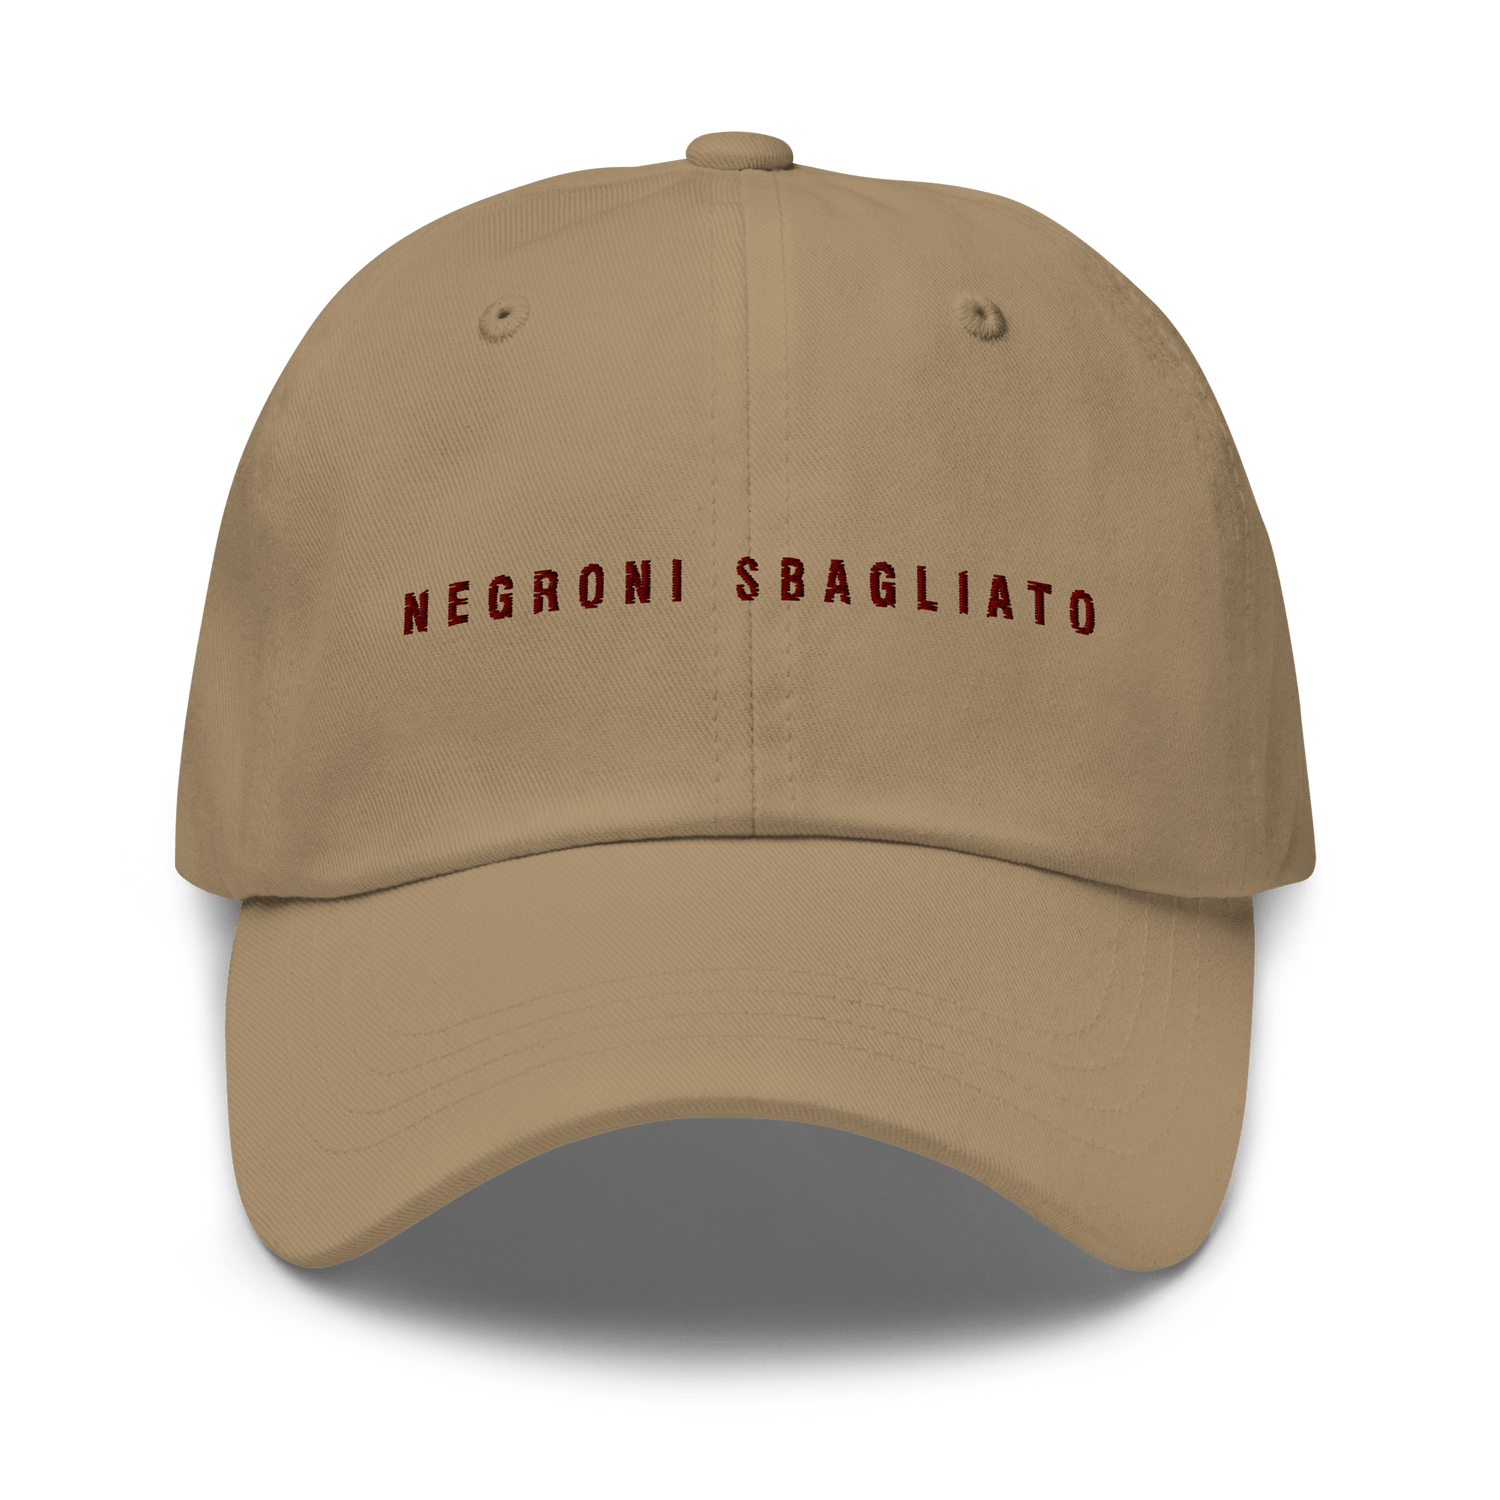 The Negroni Sbagliato Dad hat